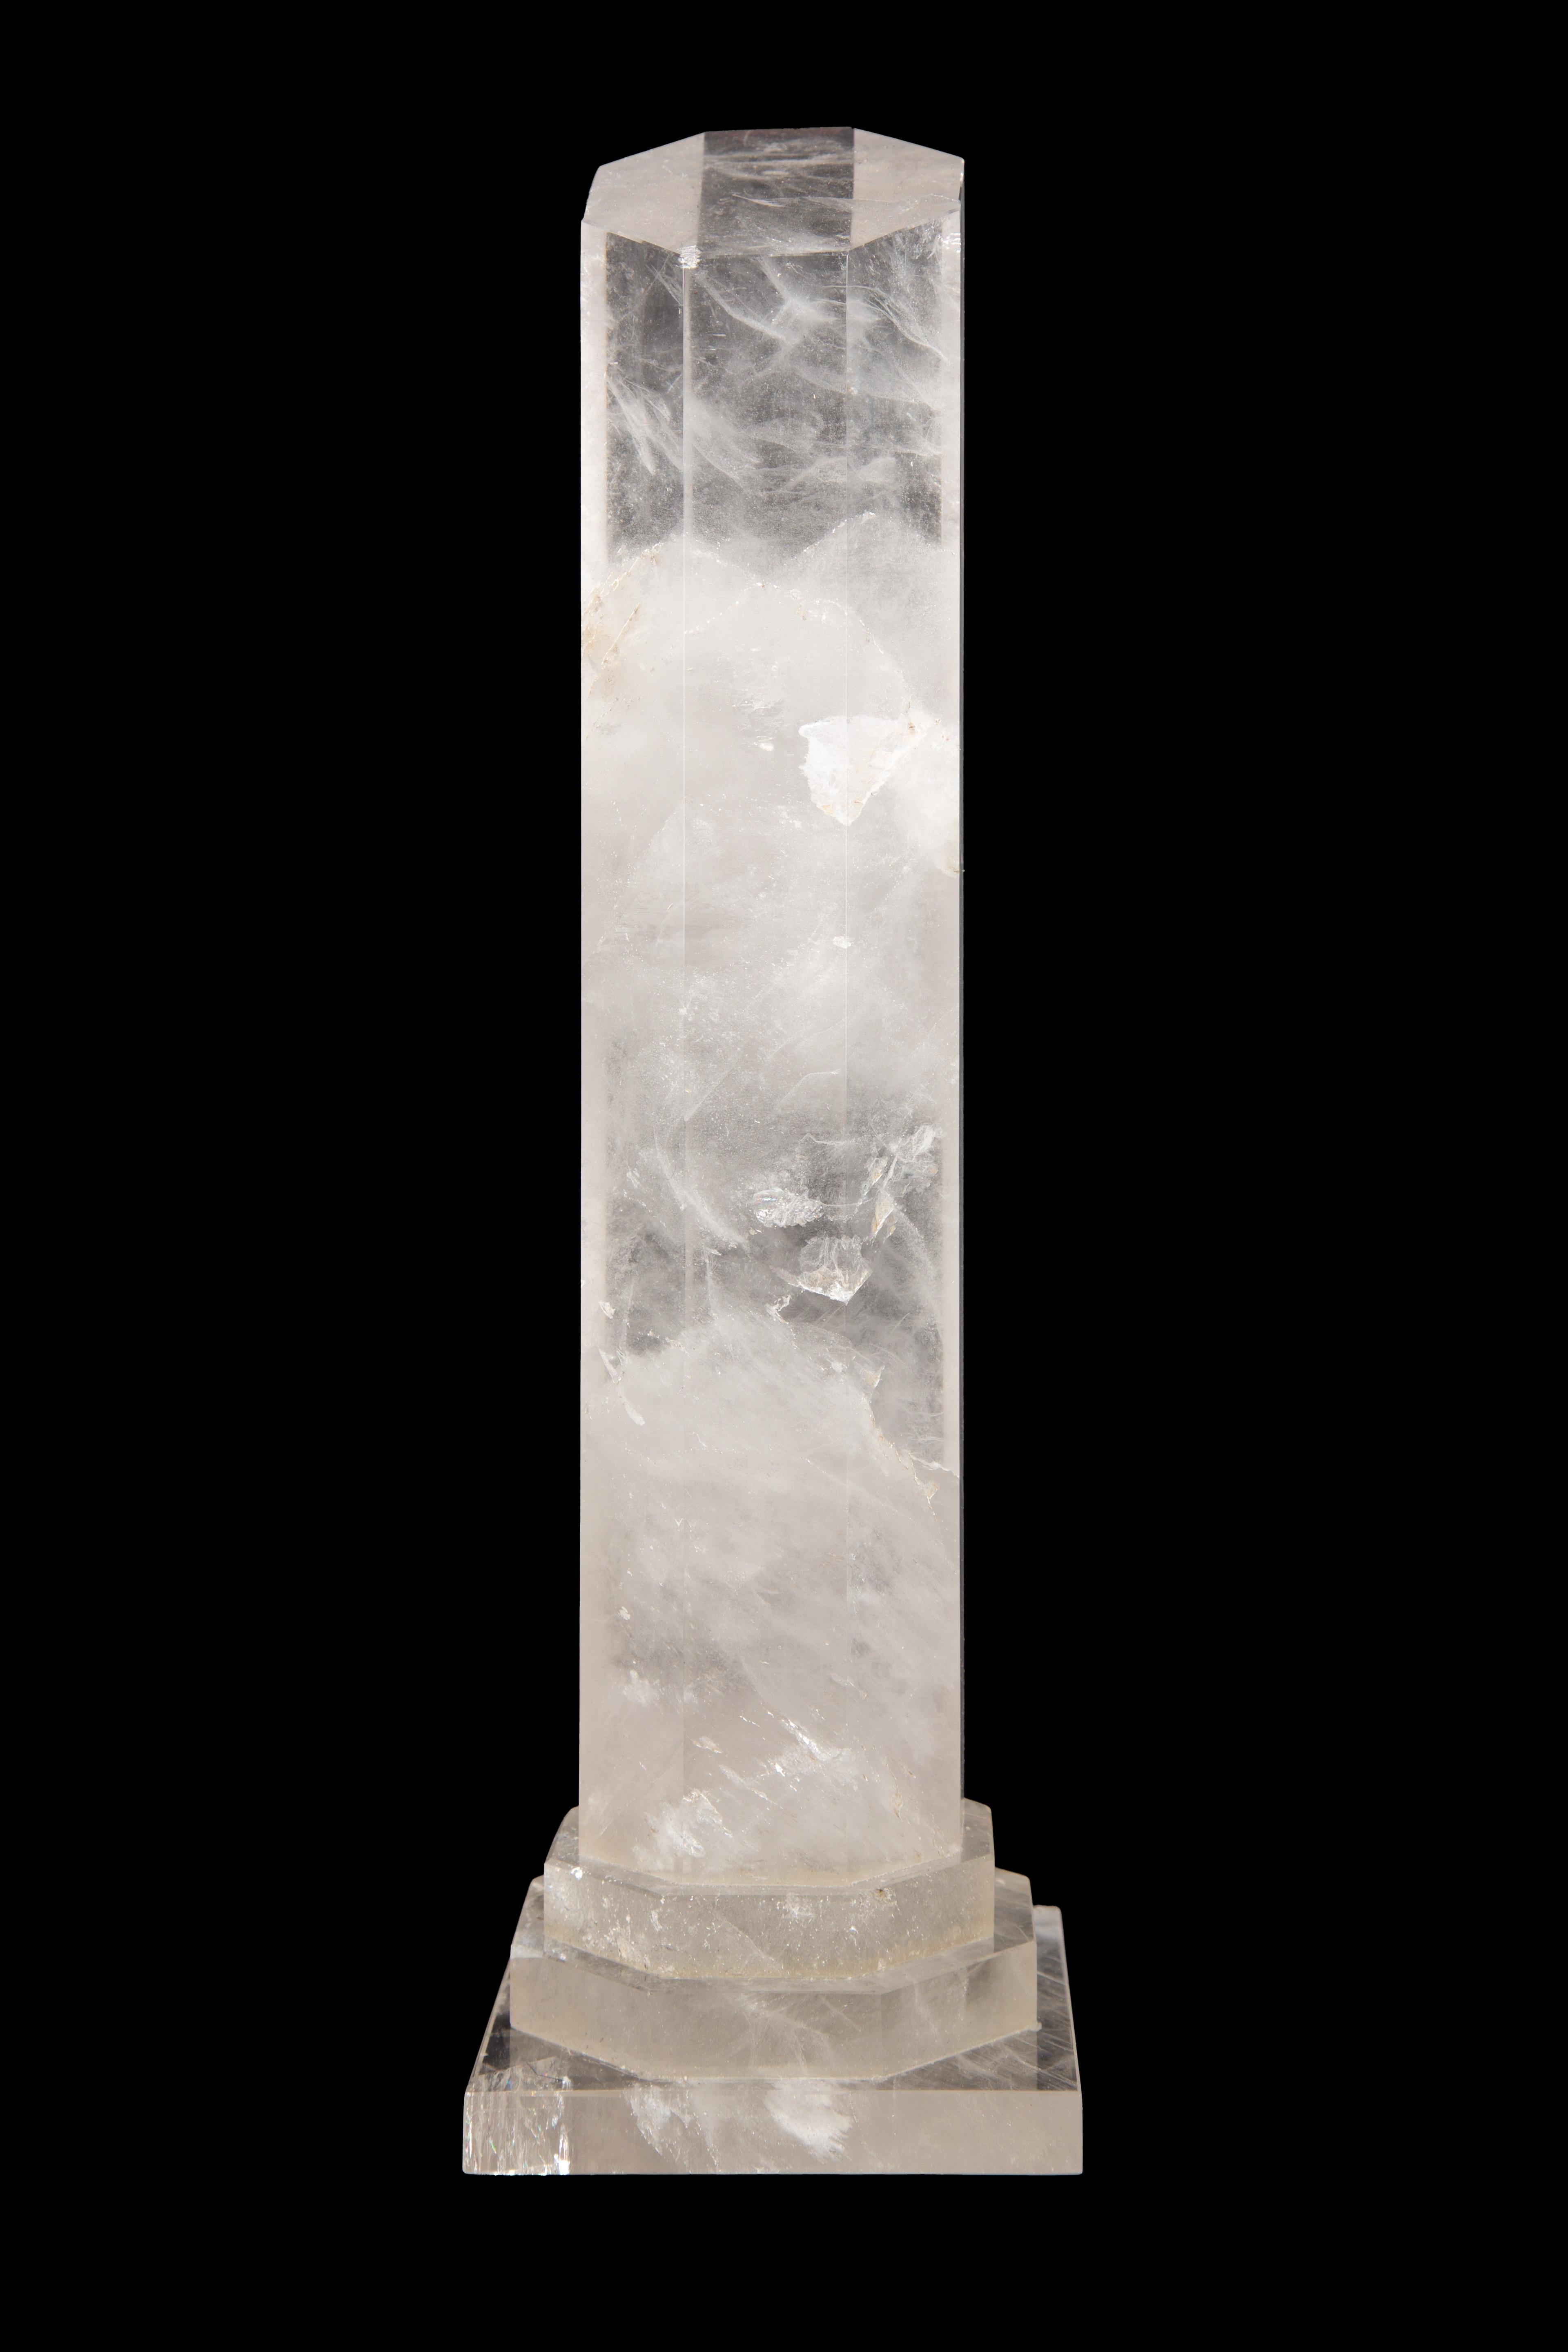 Carved rock crystal column:

Measures: 3.25